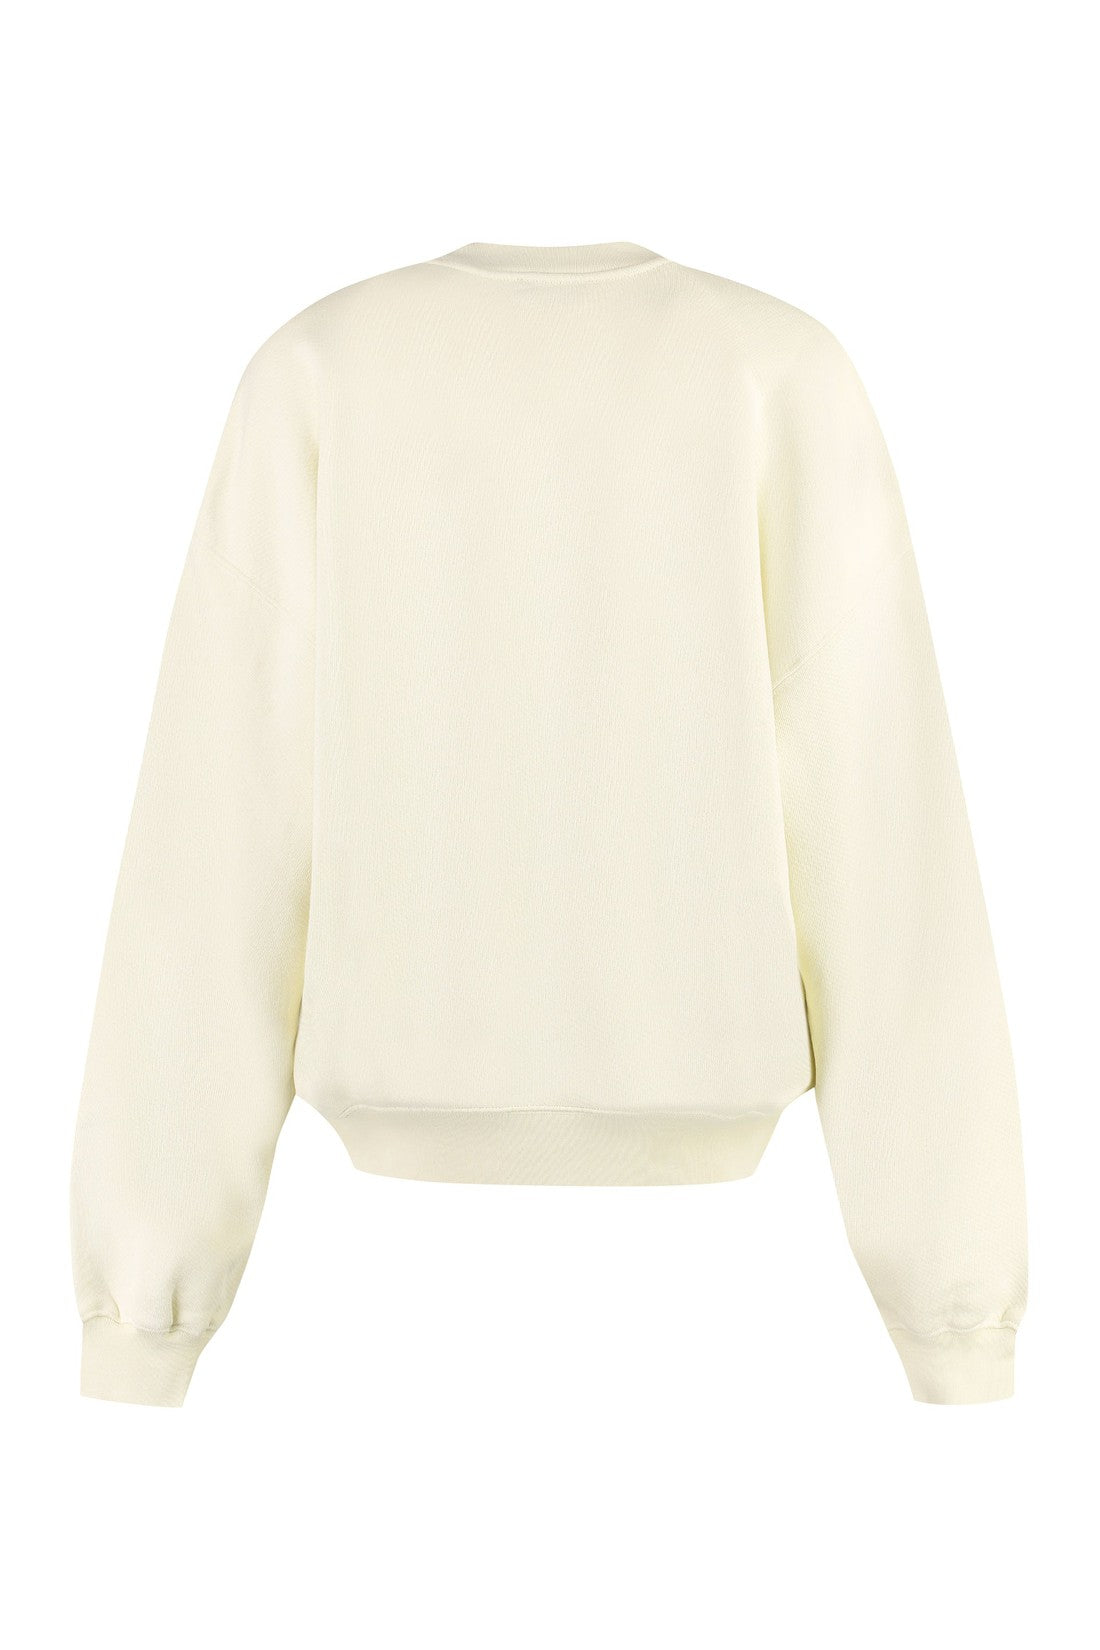 Off-White-OUTLET-SALE-Cotton crew-neck sweatshirt-ARCHIVIST